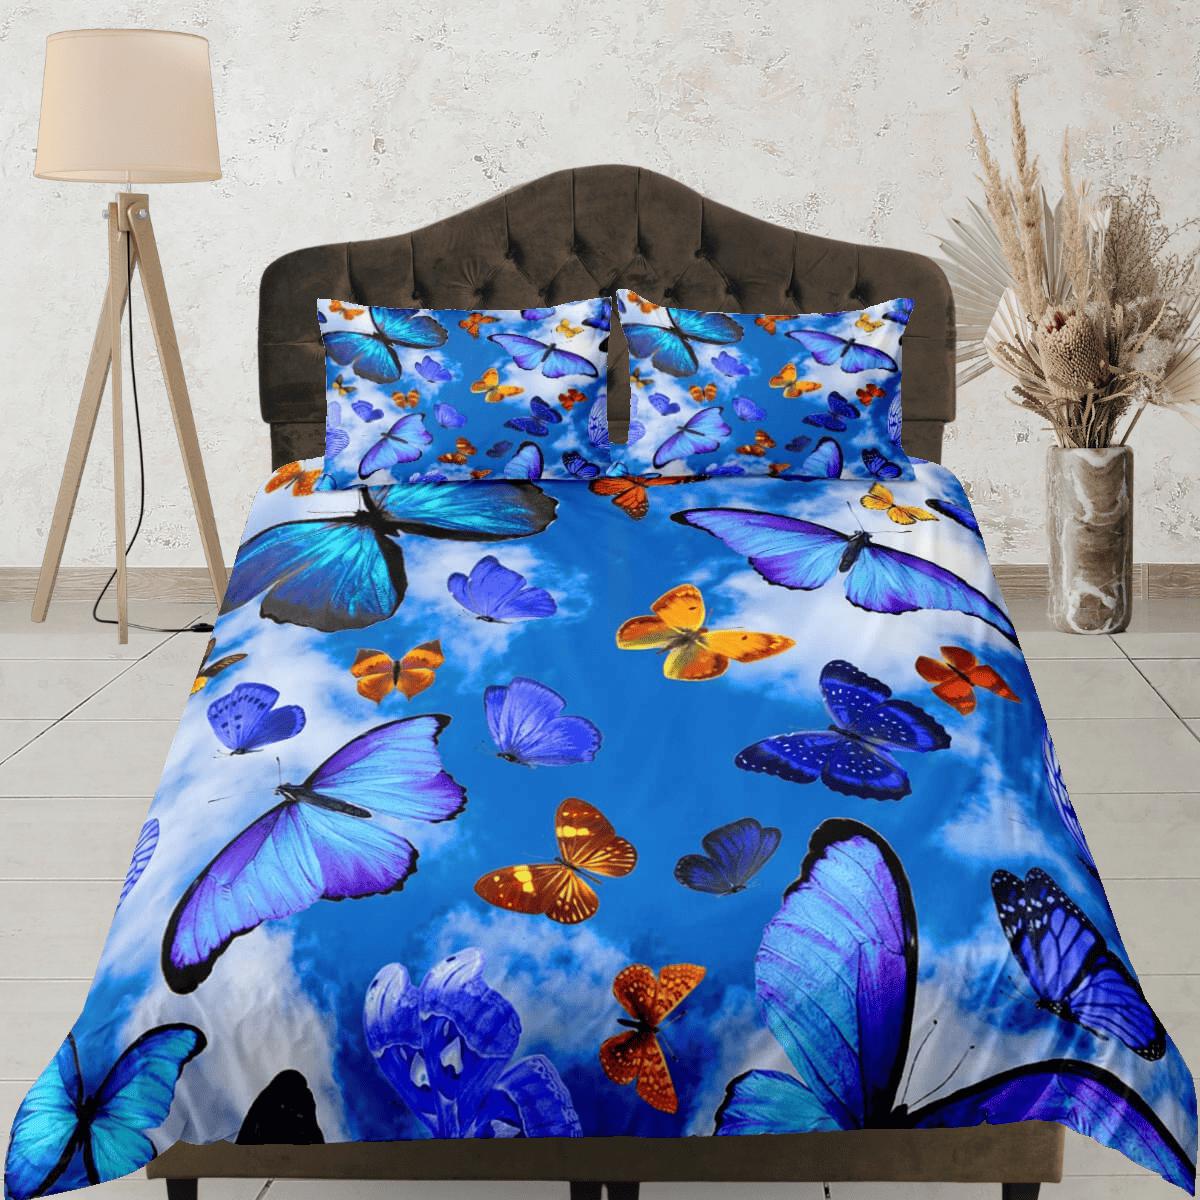 daintyduvet Sky blue butterfly bedding boho chic aesthetic duvet cover, dorm bedding full size adult duvet king queen twin, nursery toddler bedding